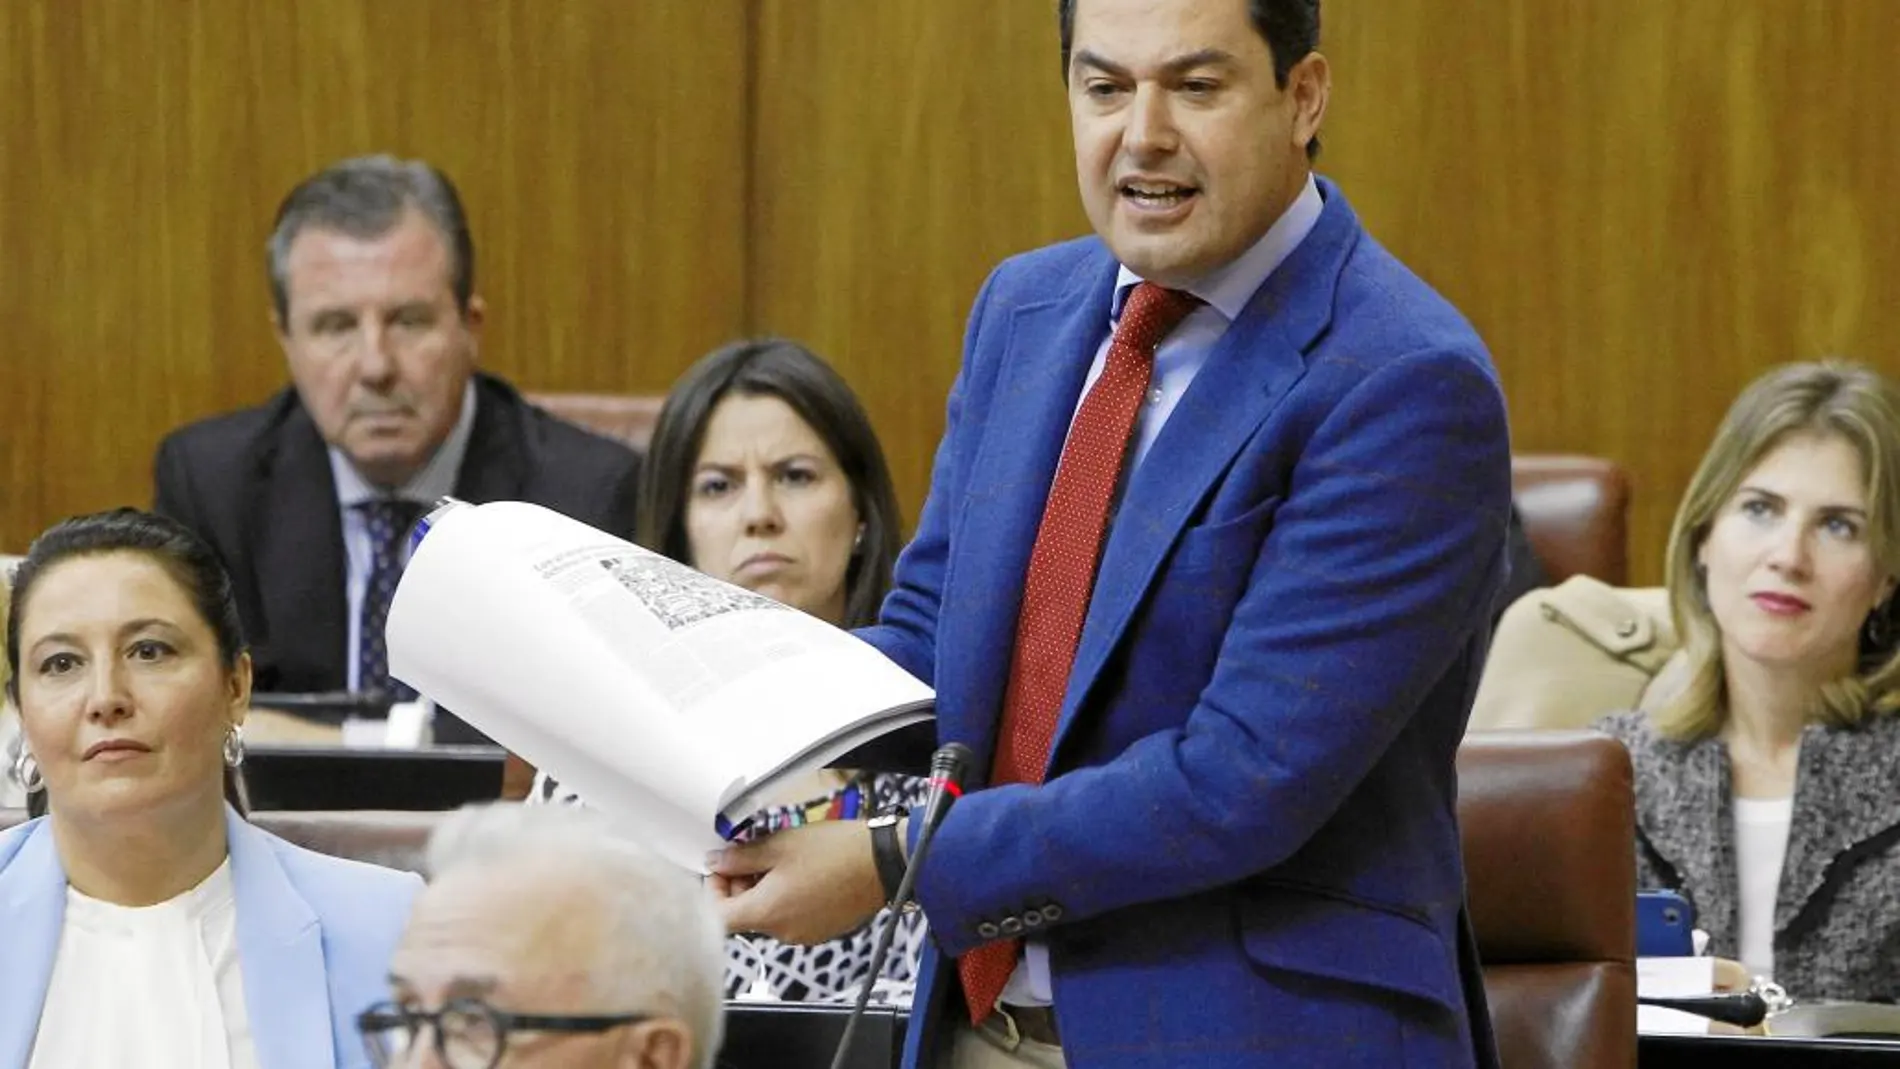 La sanidad protagonizó ayer el enfrentamiento parlamentario entre la presidenta de la Junta, Susana Díaz, y el líder de los populares andaluces, Juanma Moreno, con momentos tensos.